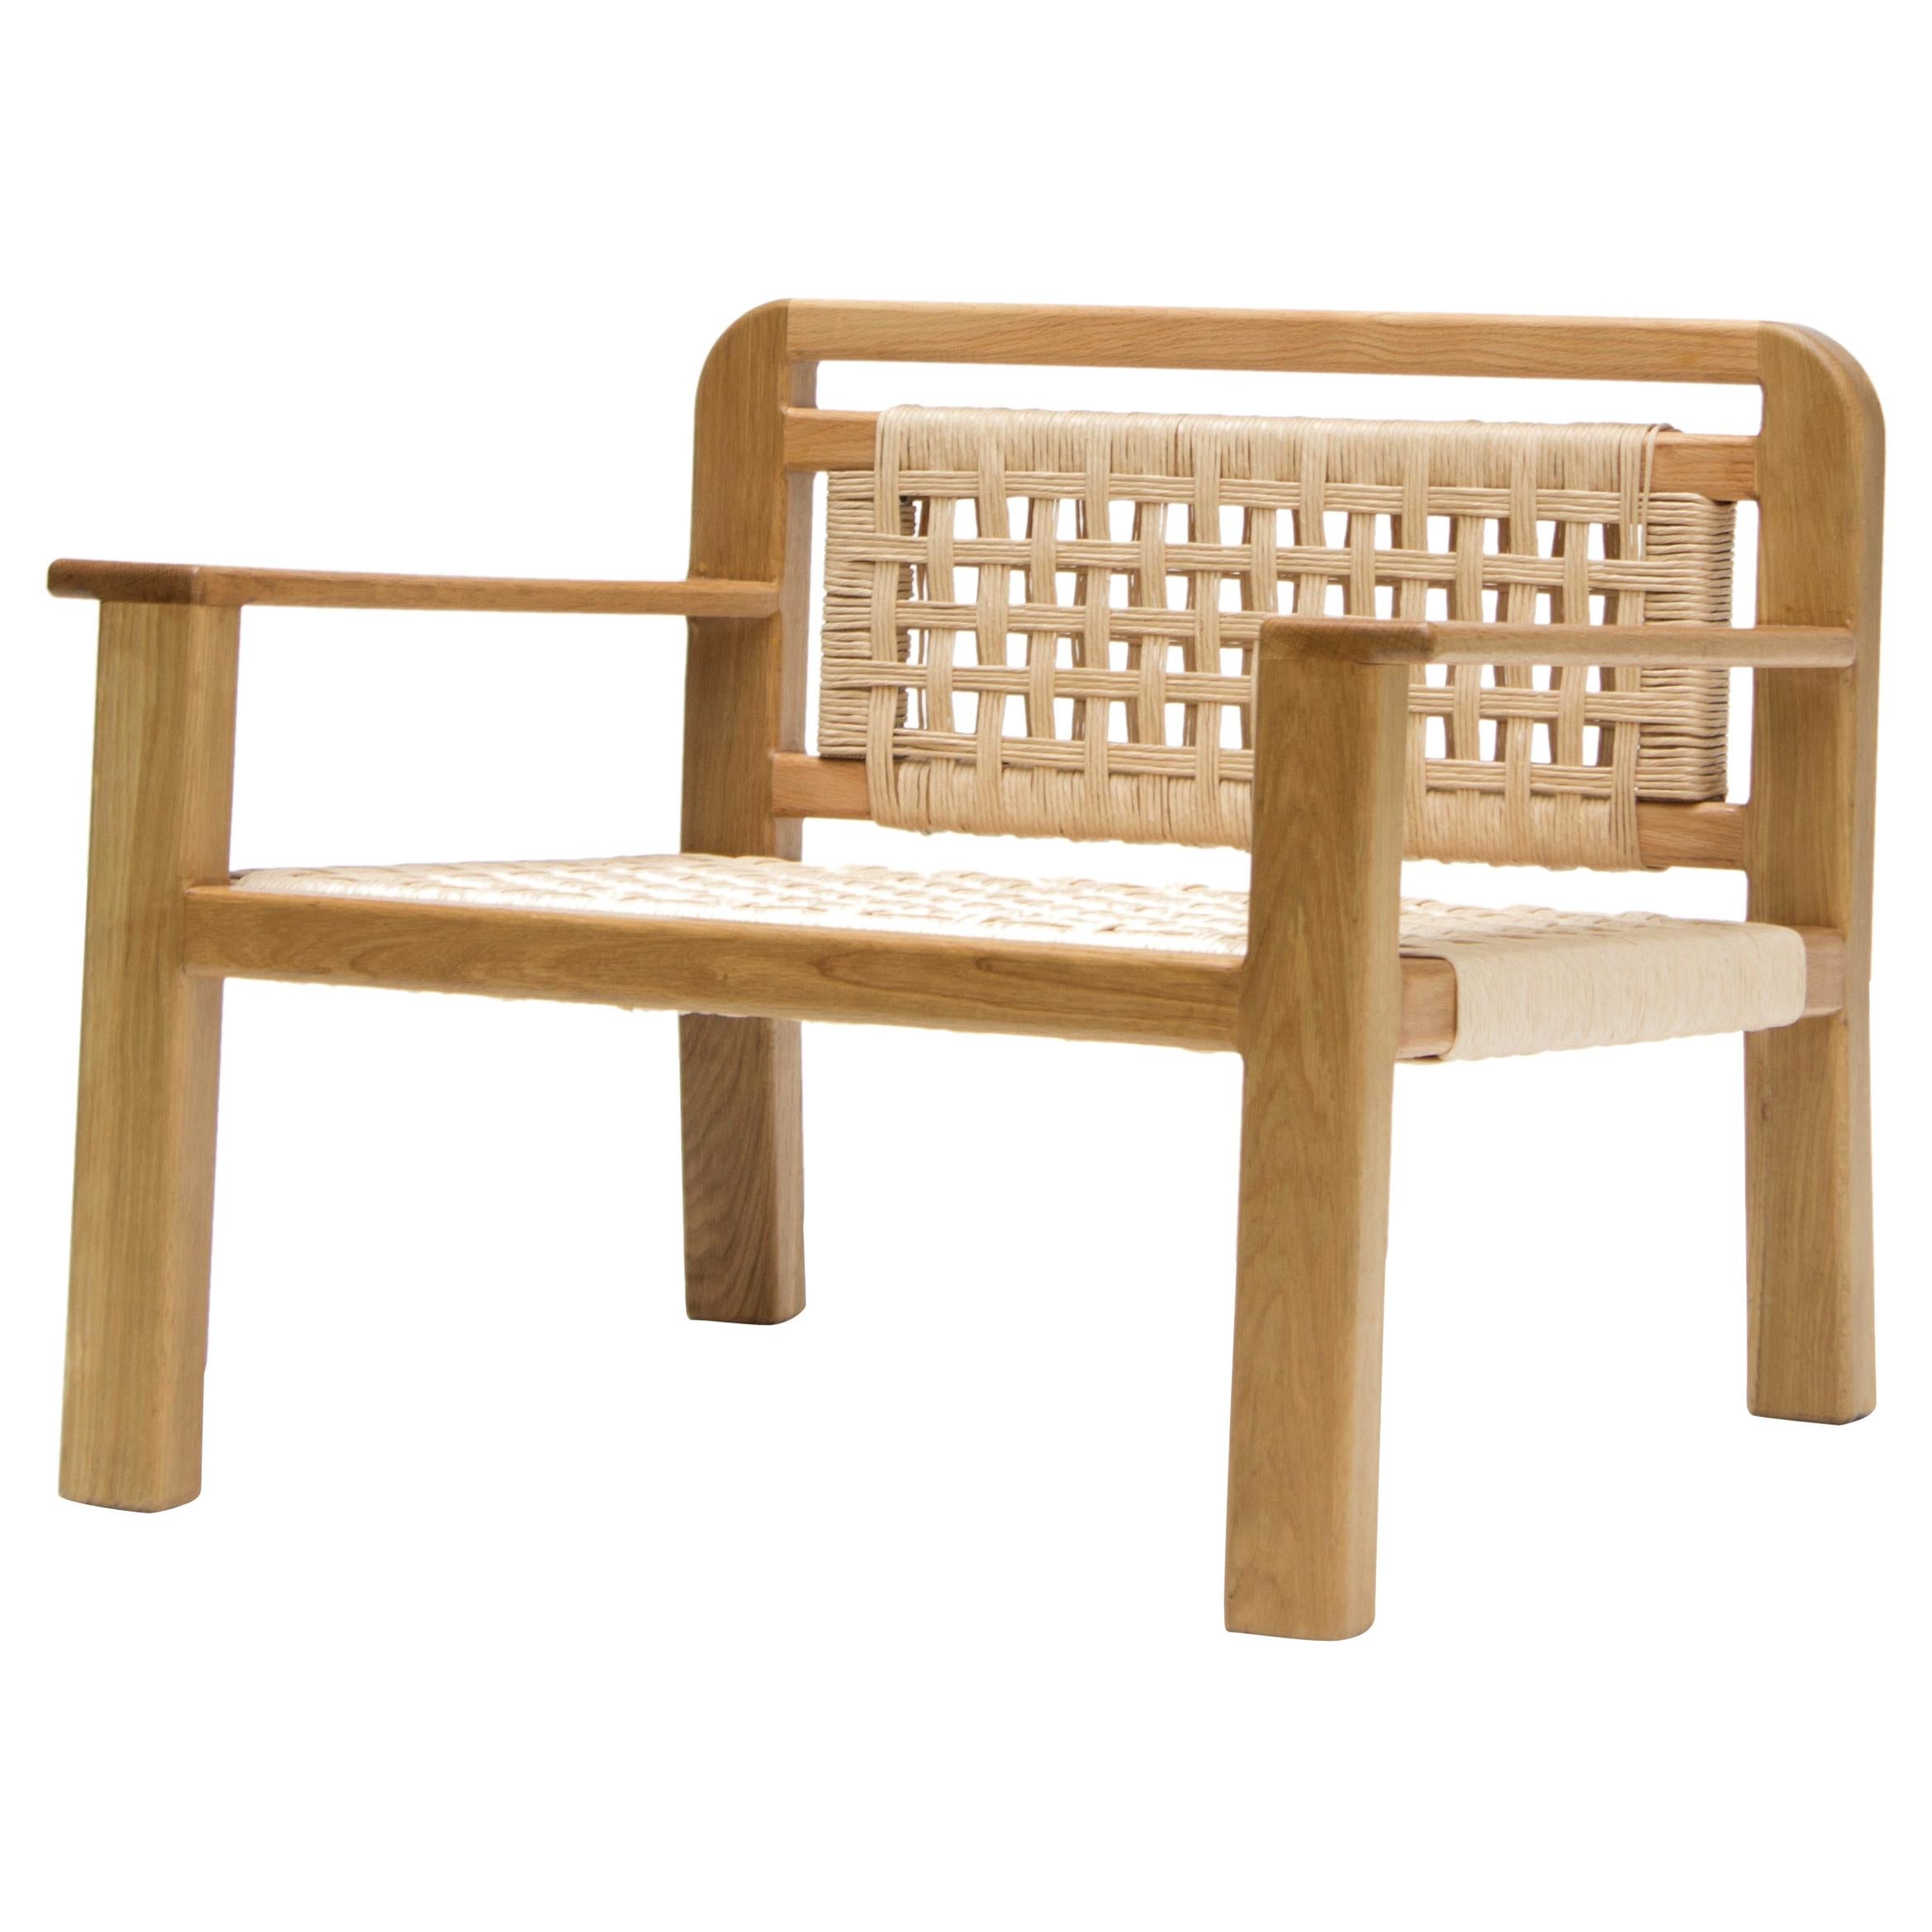 Ce fauteuil August d'inspiration tropicale et moderne est une création unique de León León Design de Mexico. Il présente un cadre en bois de chêne massif avec un tissage en corde de papier. 

La pièce est entièrement fabriquée à la main dans nos